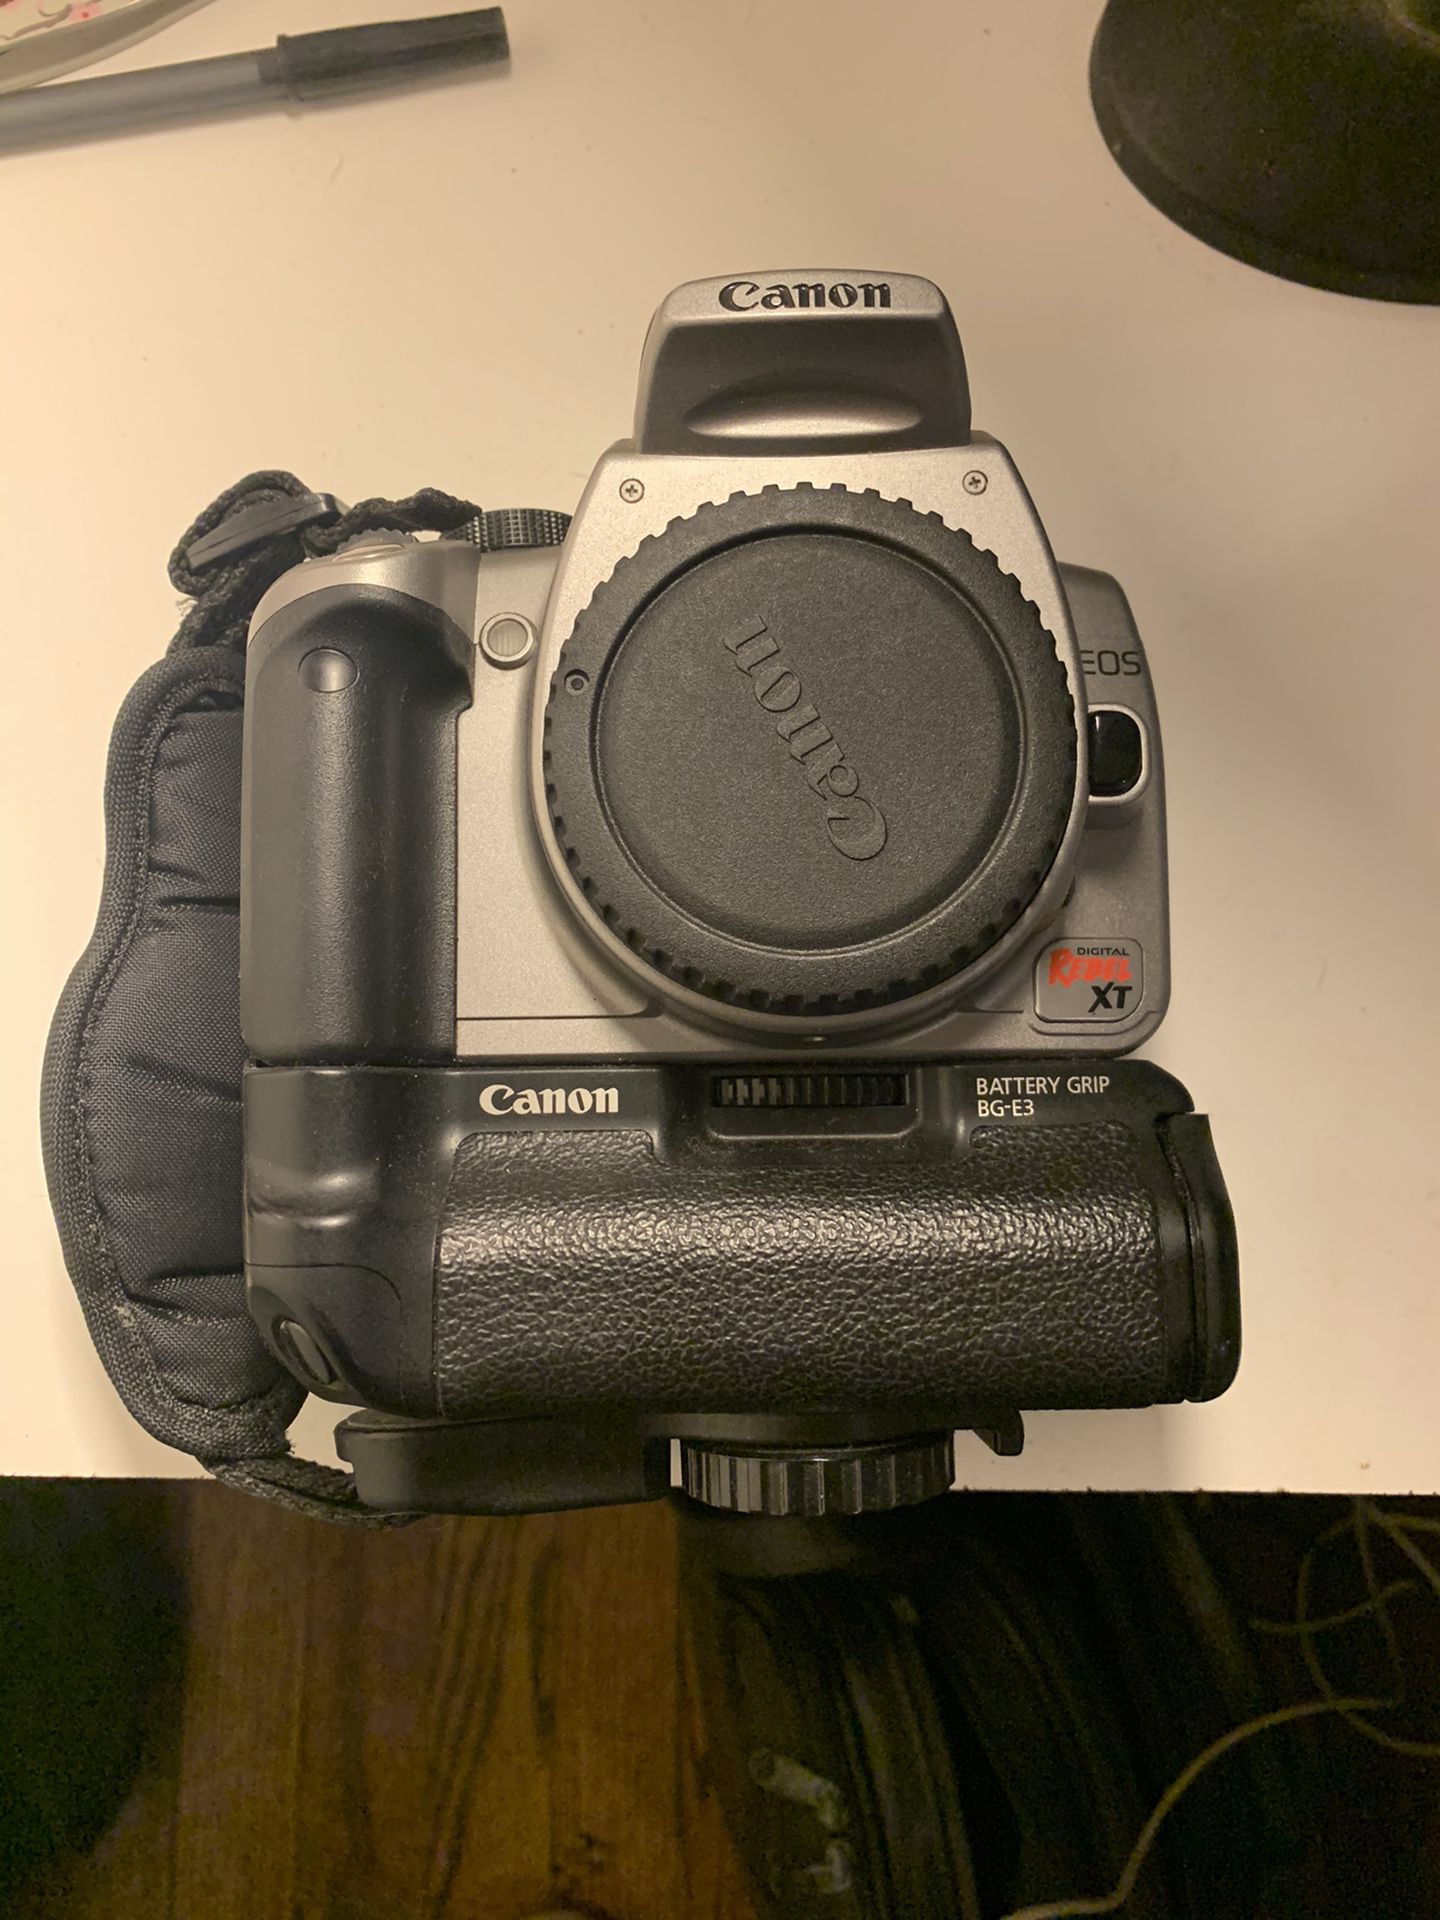 Canon Rebel XT digital camera